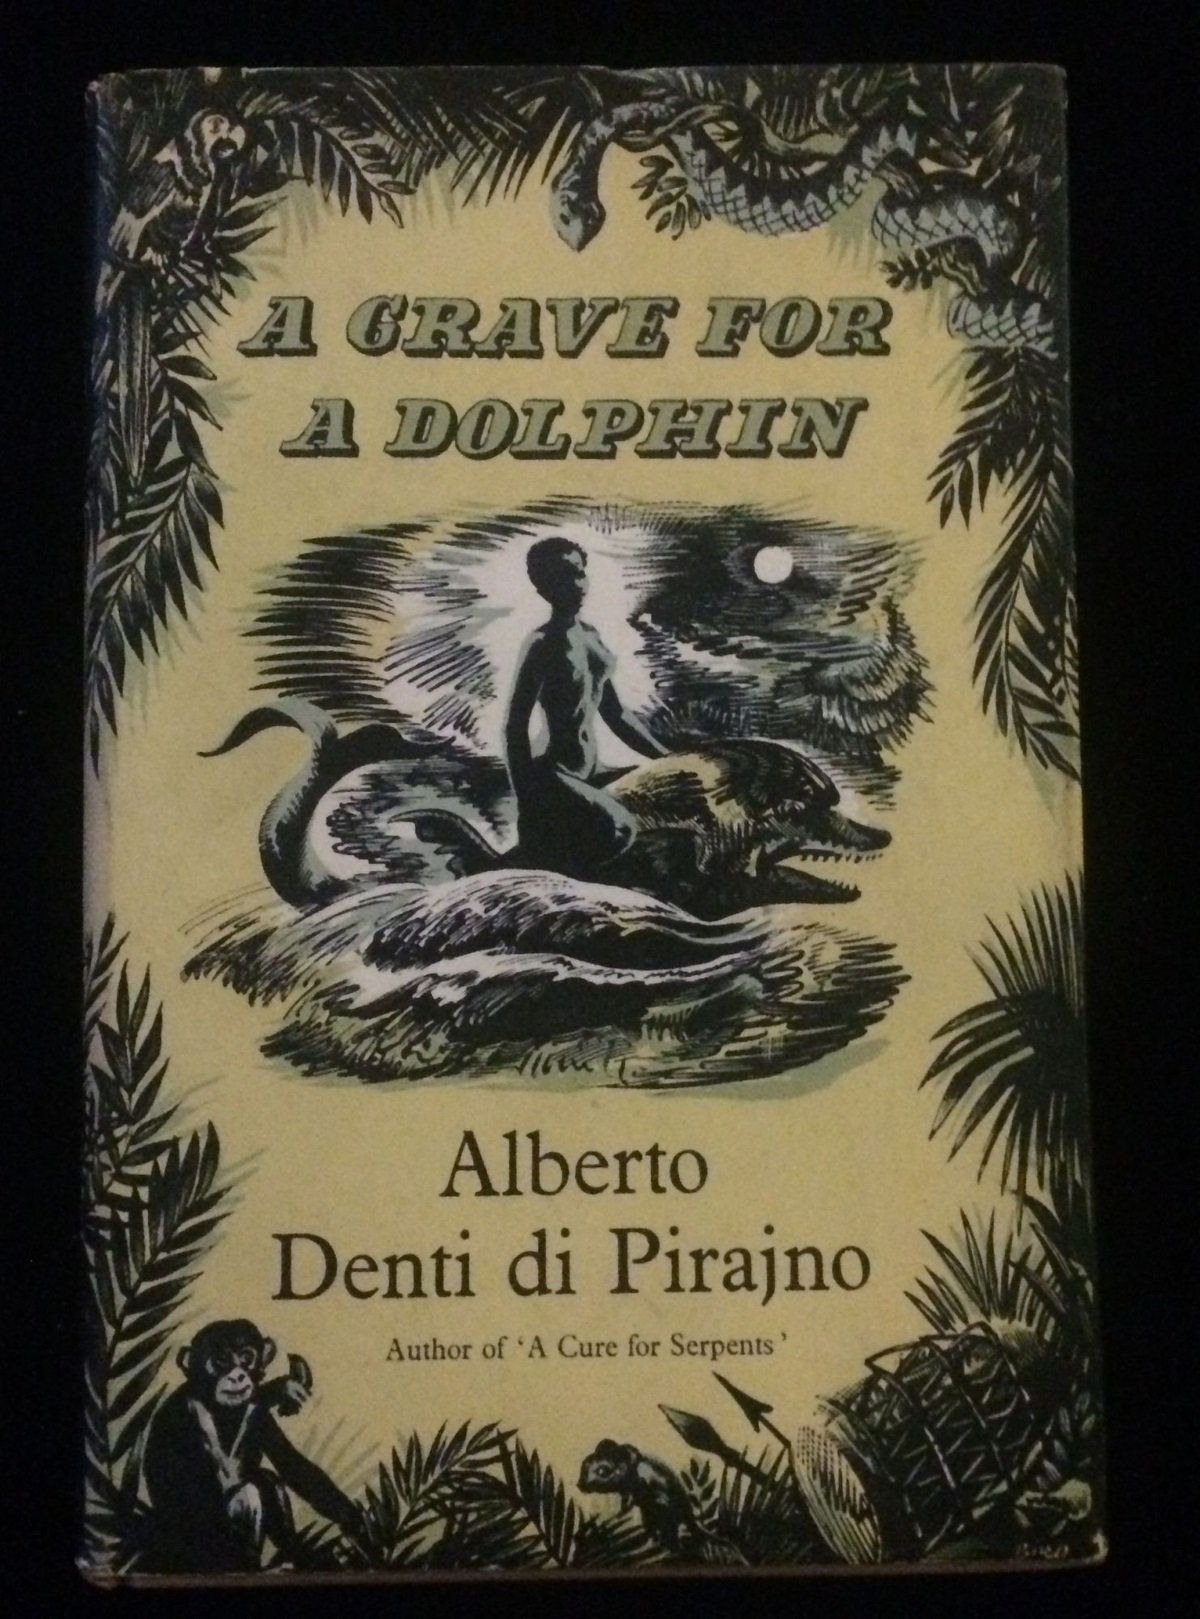 Alberto Denti di Pirajno